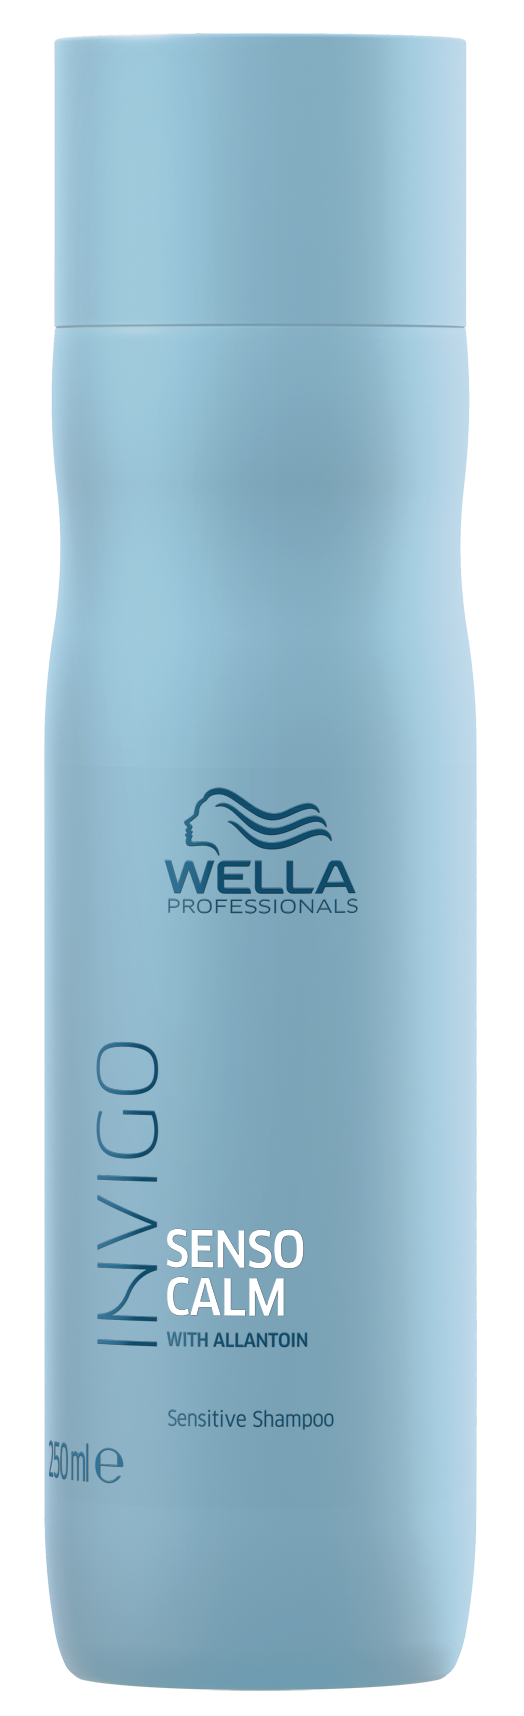 Шампунь Wella Professionals Для чувствительной кожи головы 250 мл обновляющий шампунь elements wella professionals 250 мл